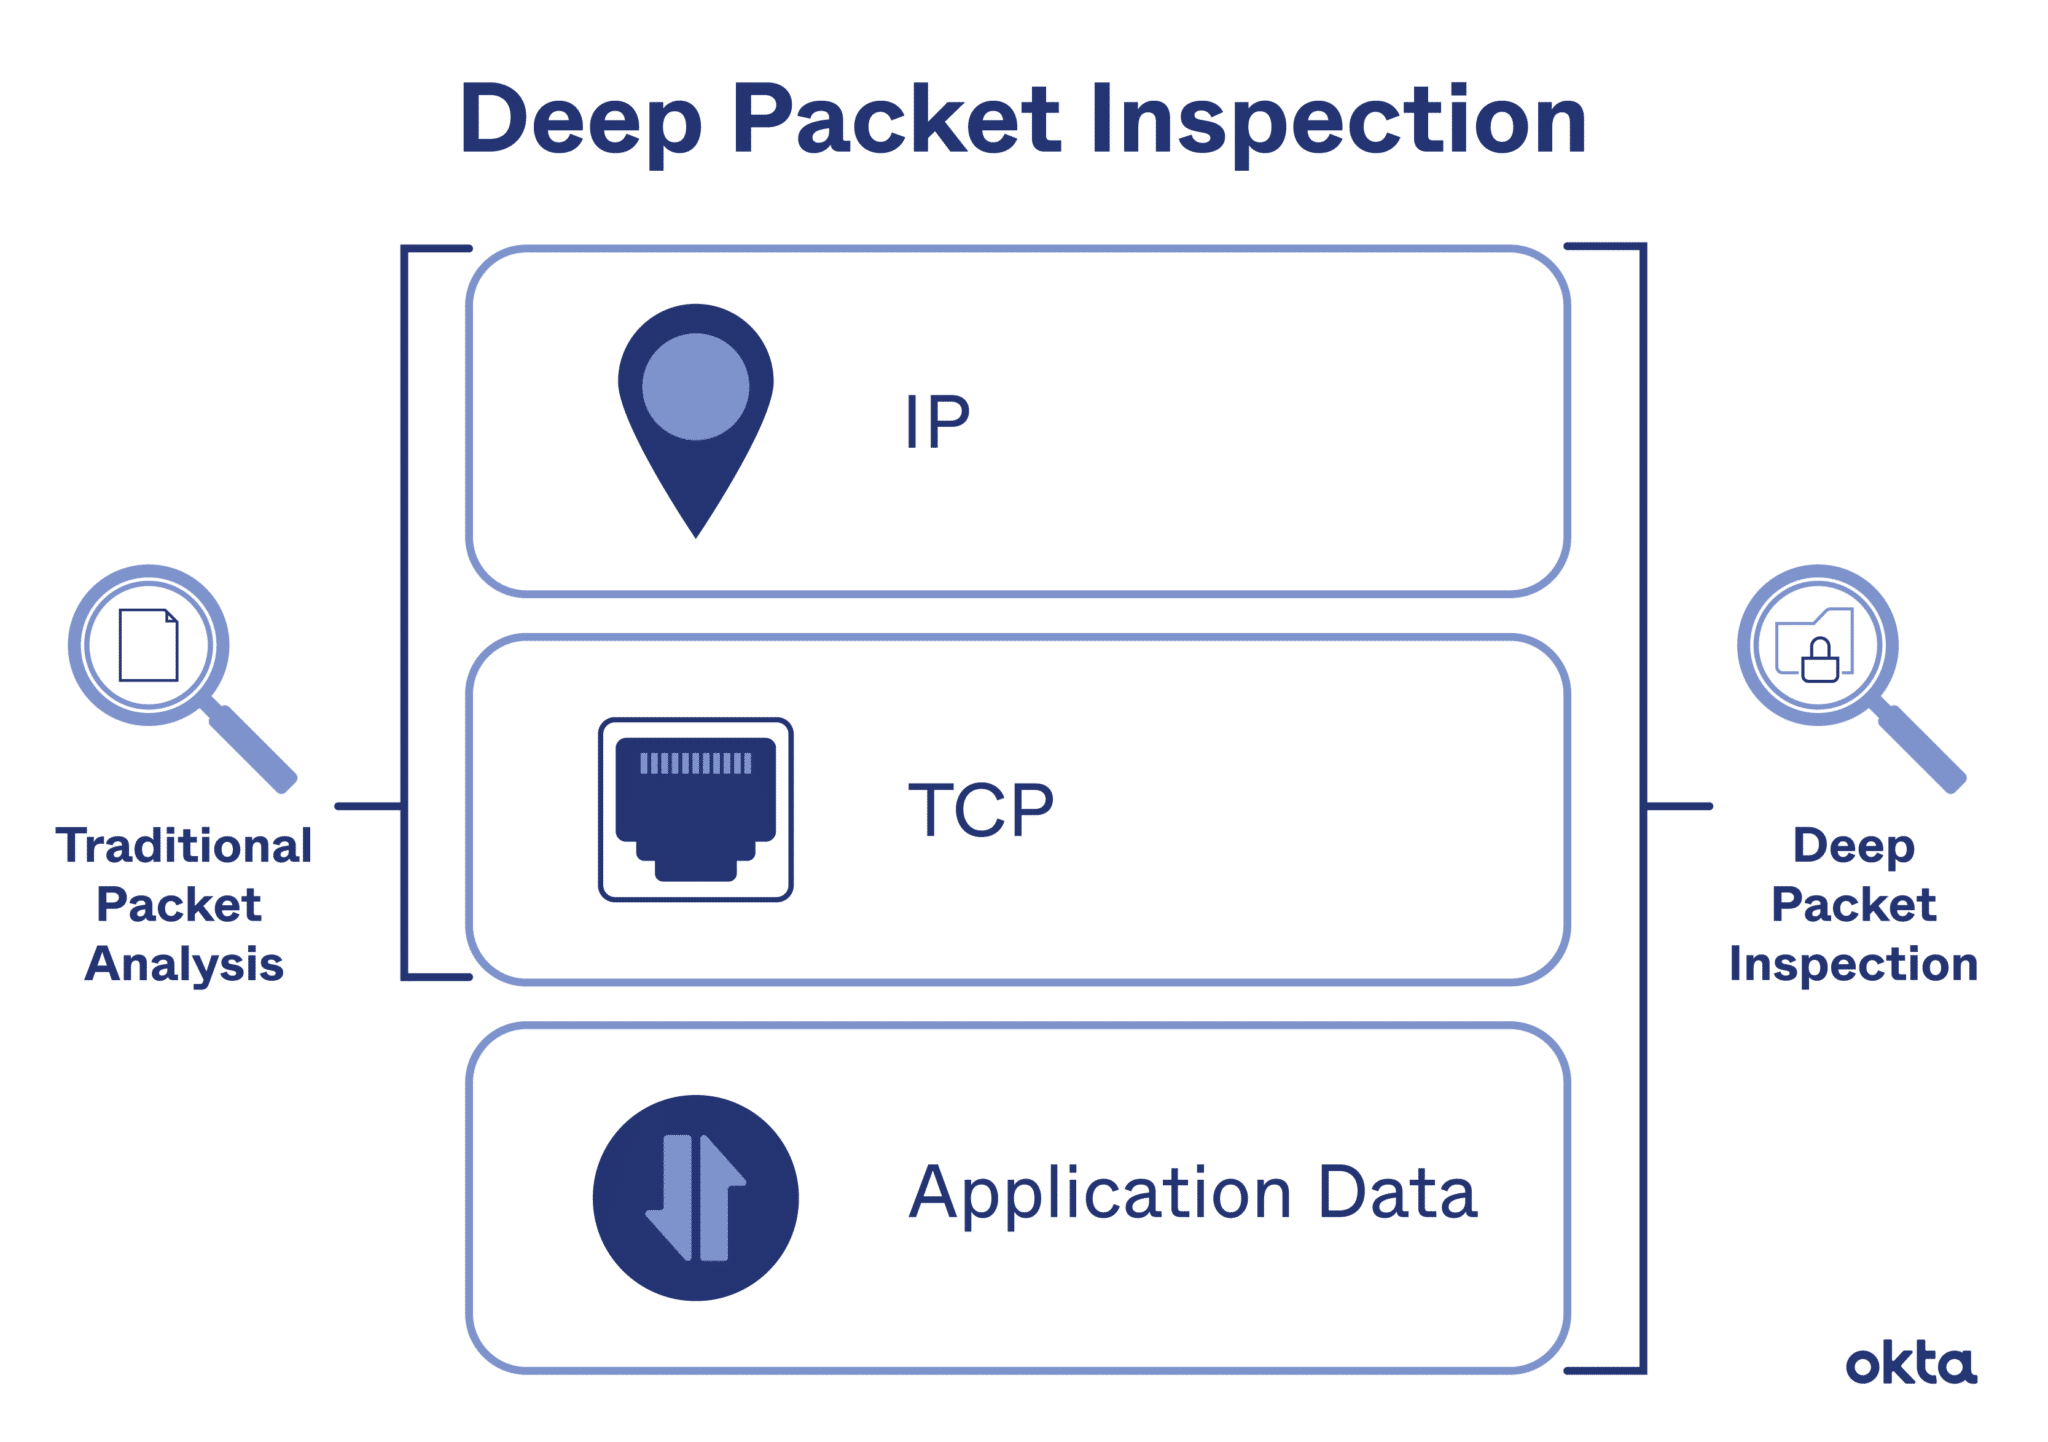 Inspeksi Paket Mendalam (DPI)